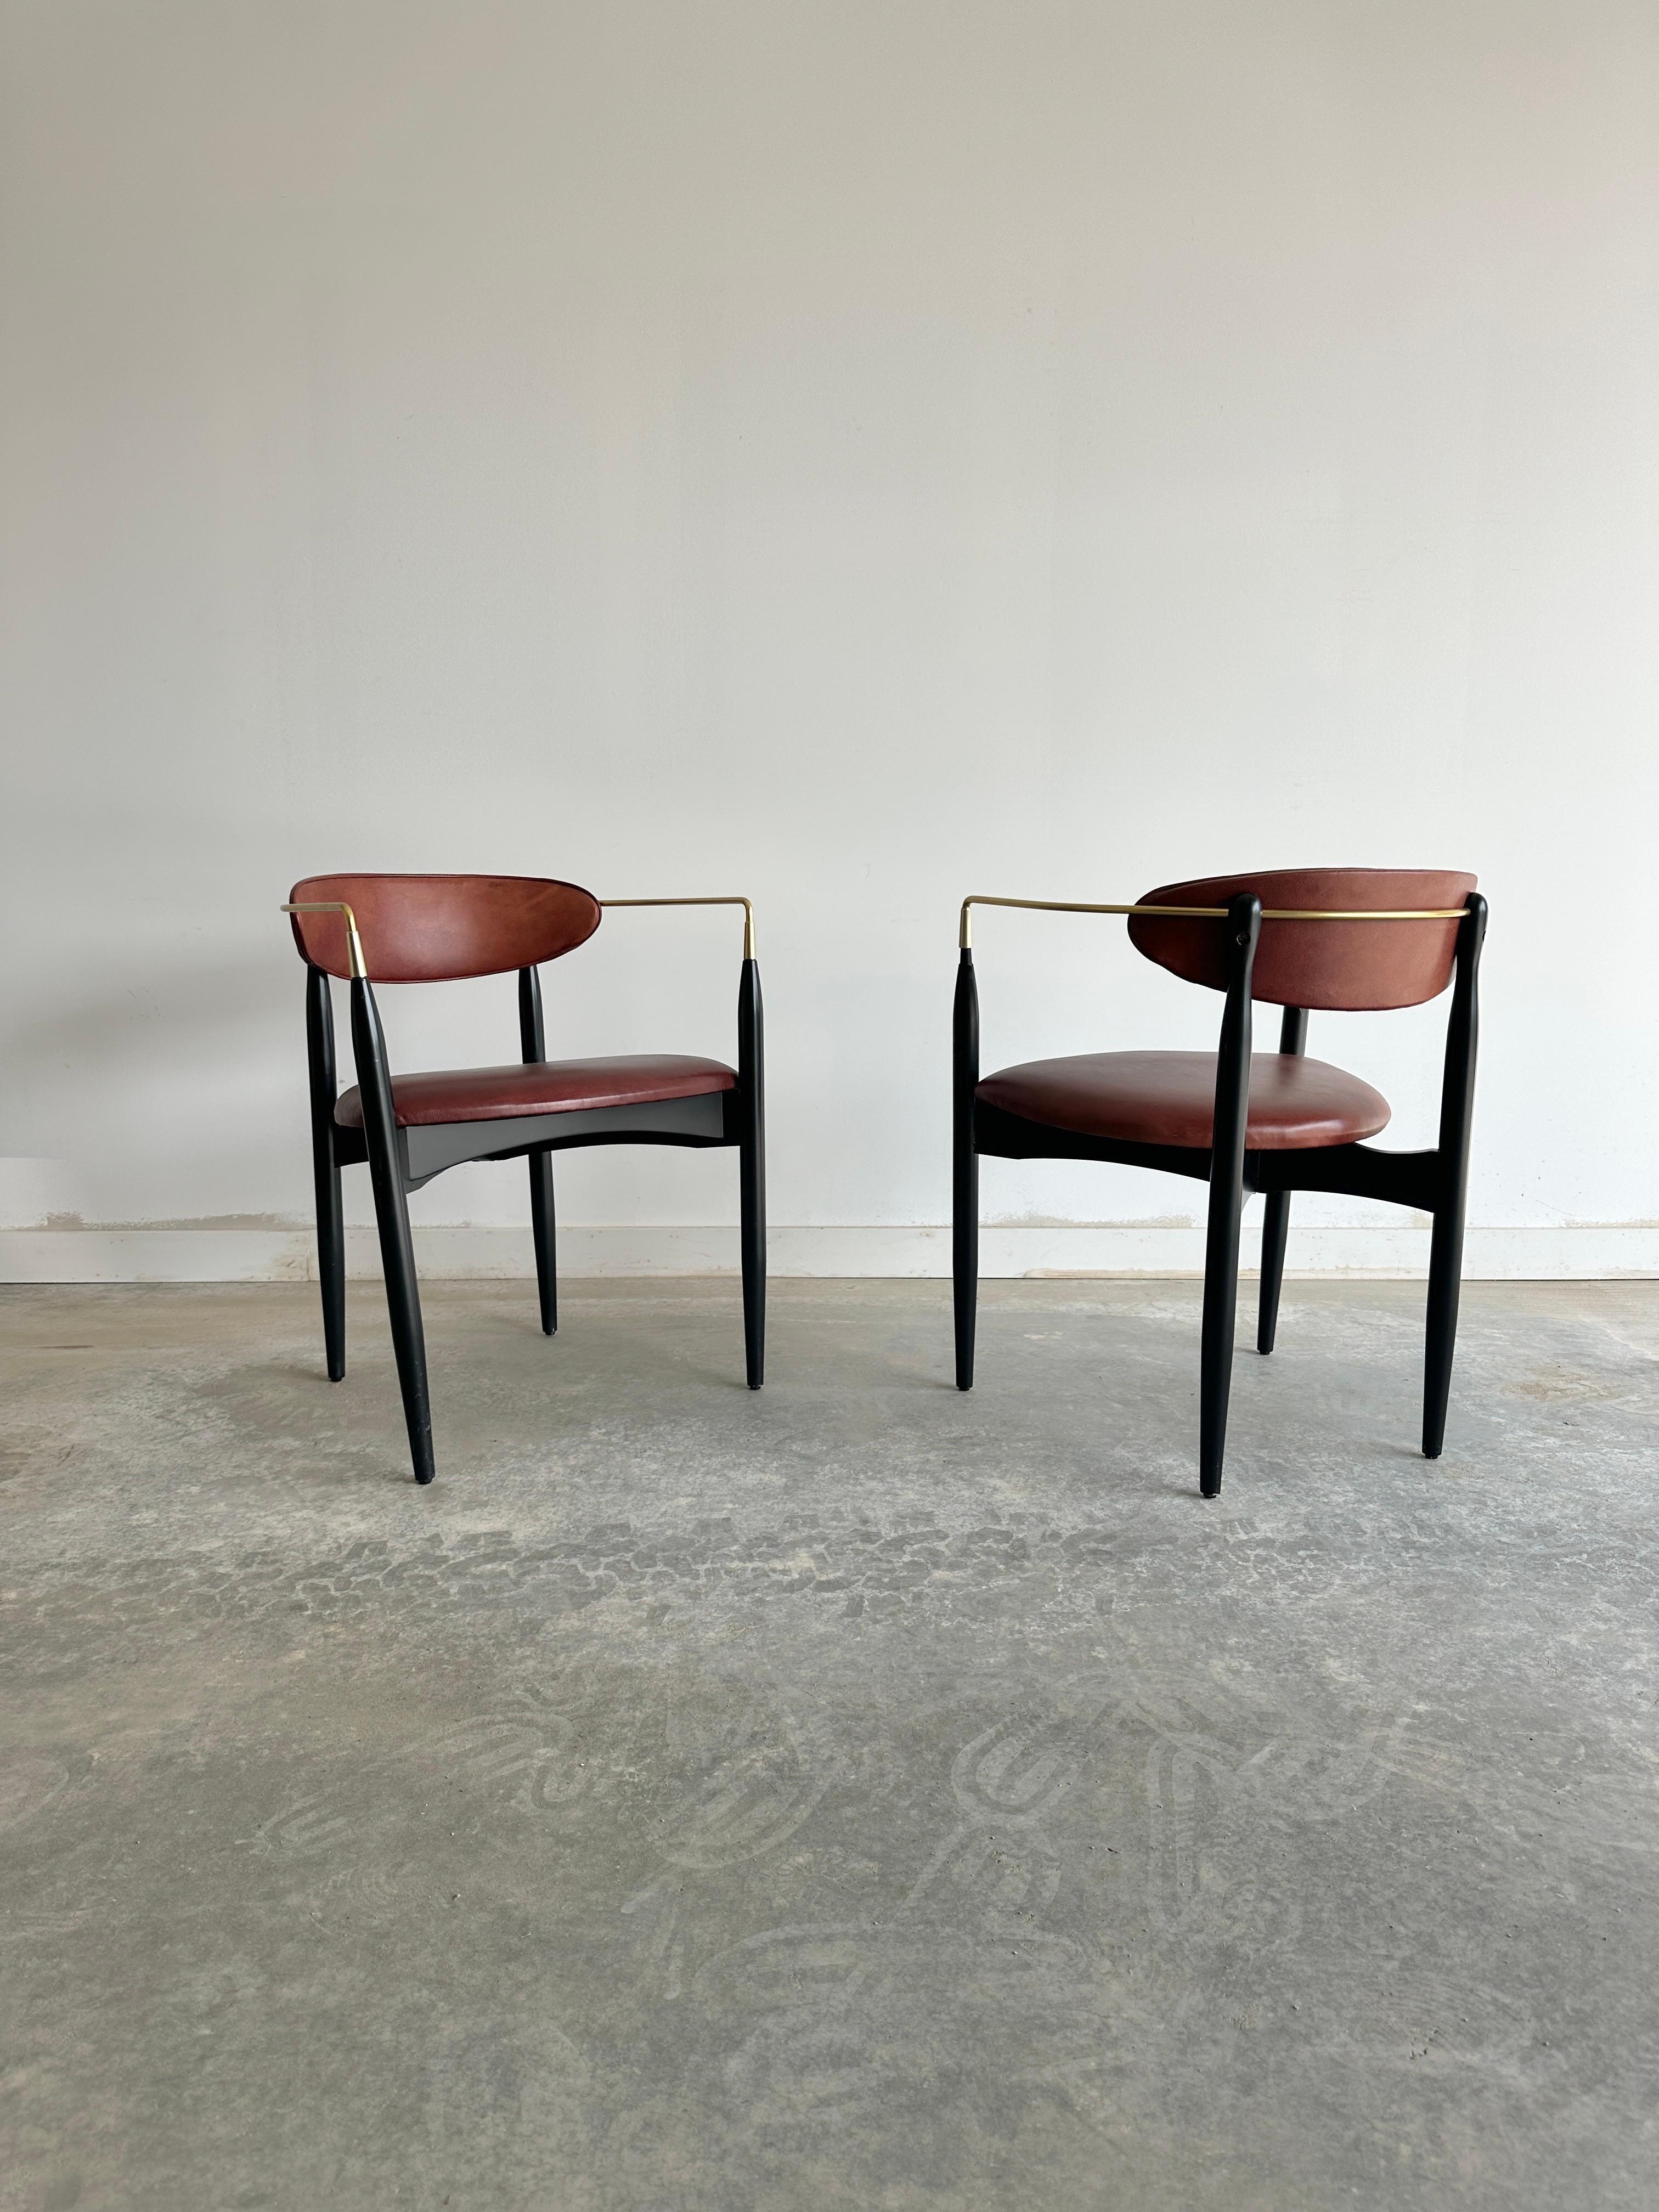 Dieser atemberaubende Sessel ist ein seltenes Beispiel für Dan Johnsons Viscount-Design für Selig, mit einem eleganten Messinggestell und einer Polsterung aus cognacfarbenem Leder. Der Stuhl hat einen unverwechselbaren modernen Stil aus der Mitte